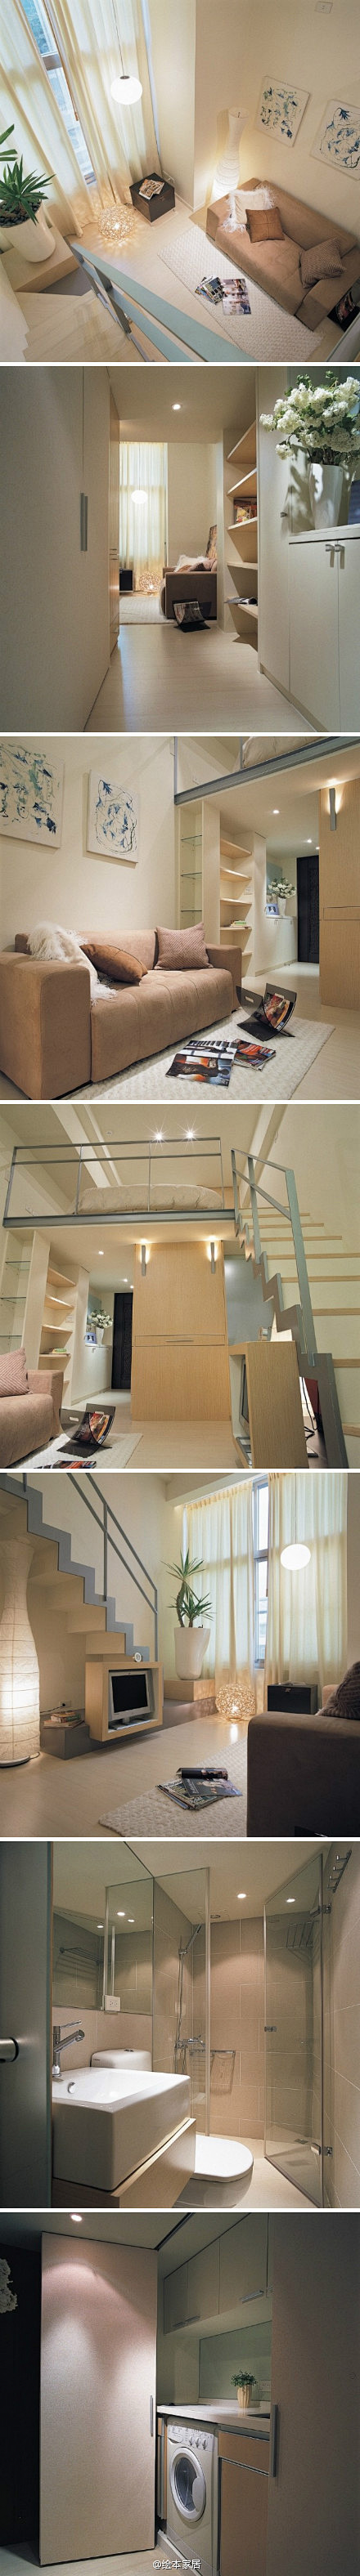 台湾设计师的46平米小户型Loft #床...